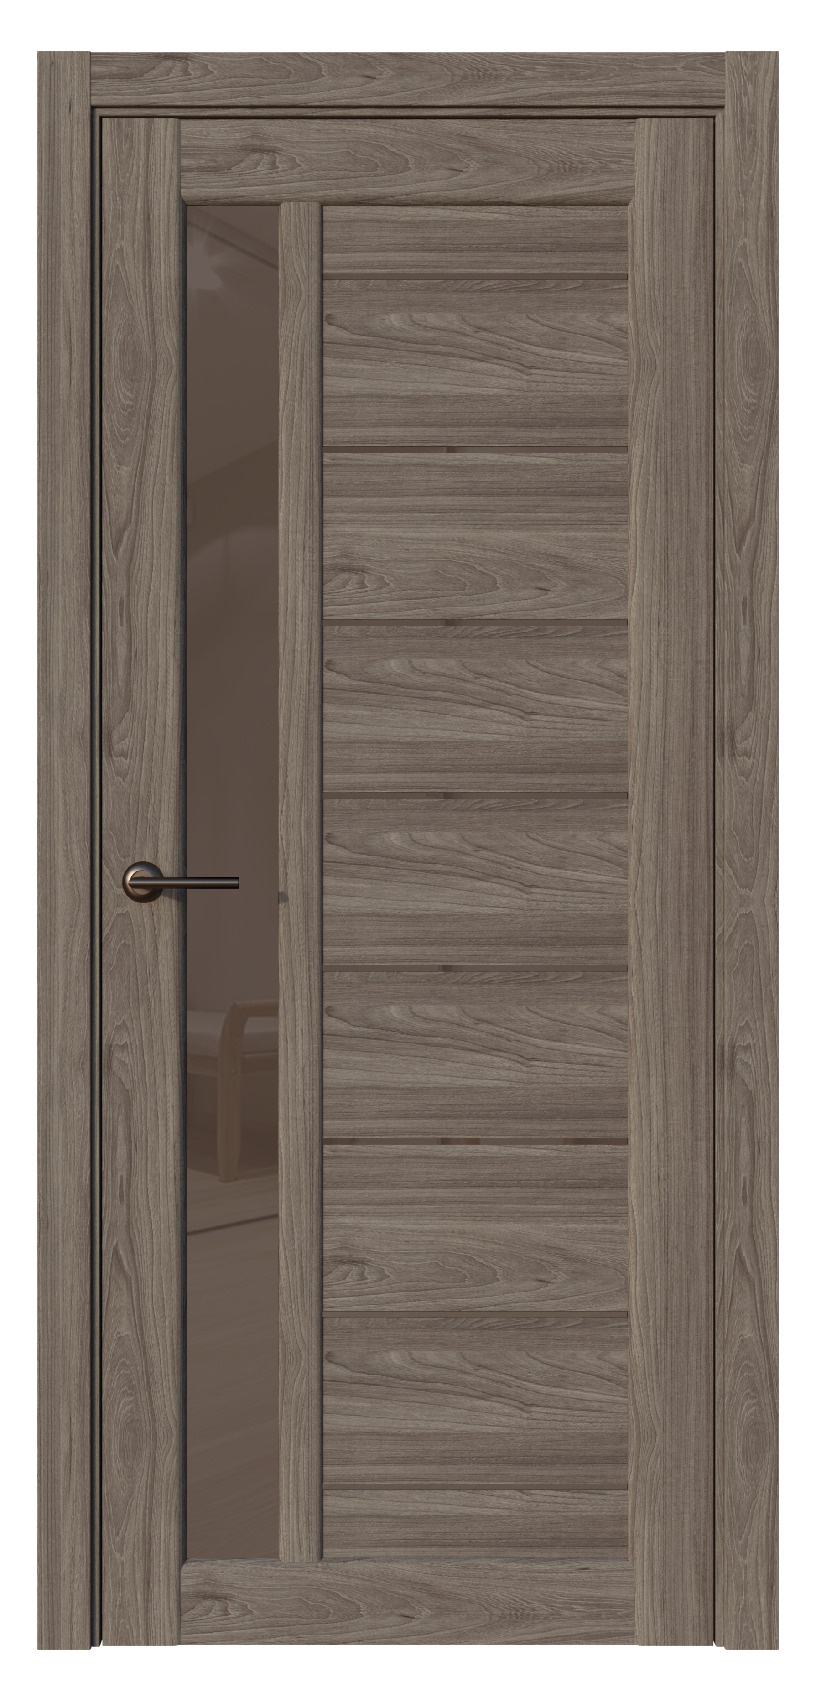 Questdoors Межкомнатная дверь QX1, арт. 17578 - фото №1